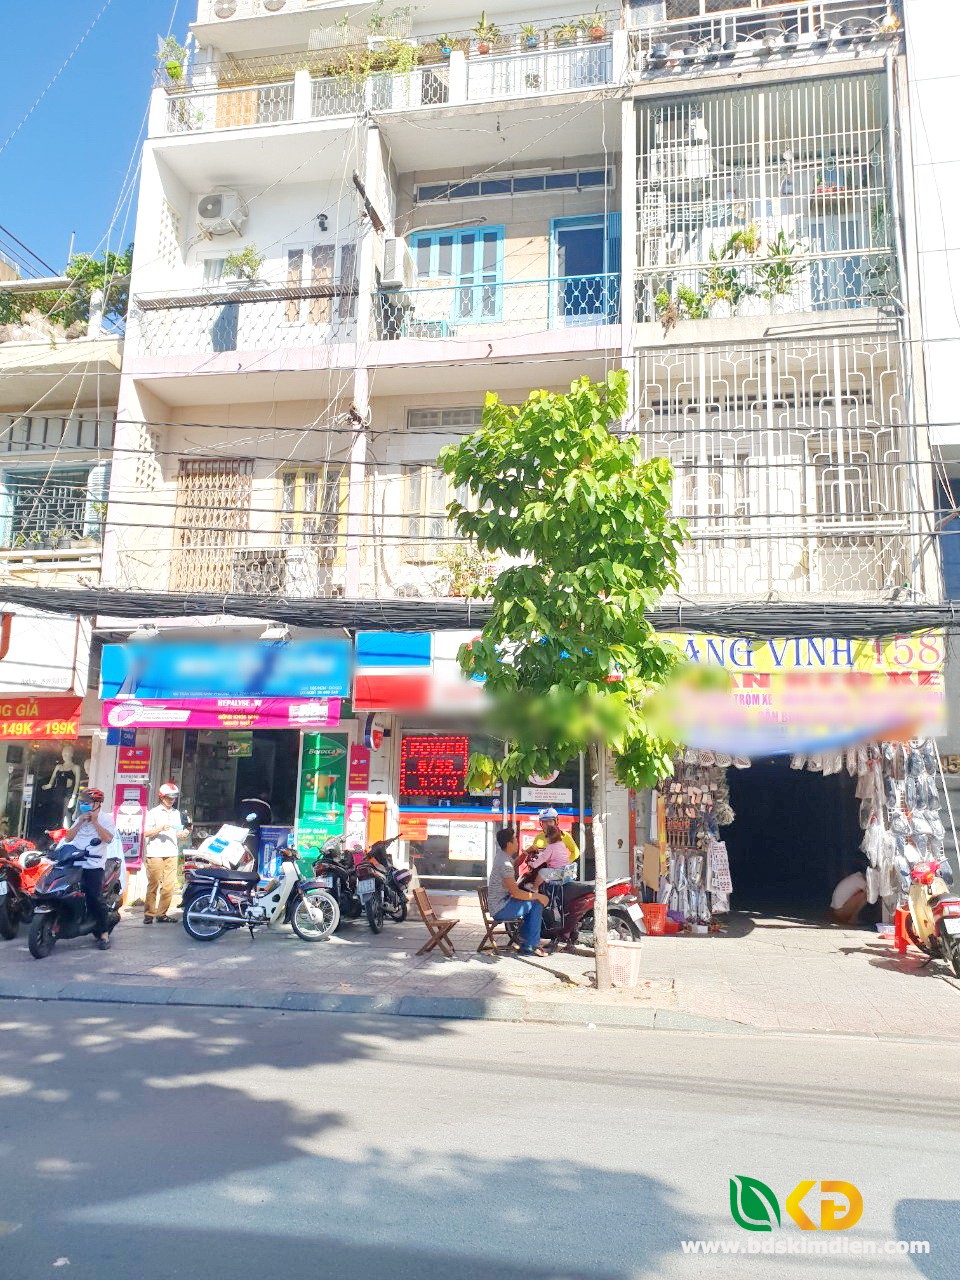 Bán nhà 1 lầu cách mặt tiền đường Trần Quang Khải 15m Phường Tân Định Quận 1